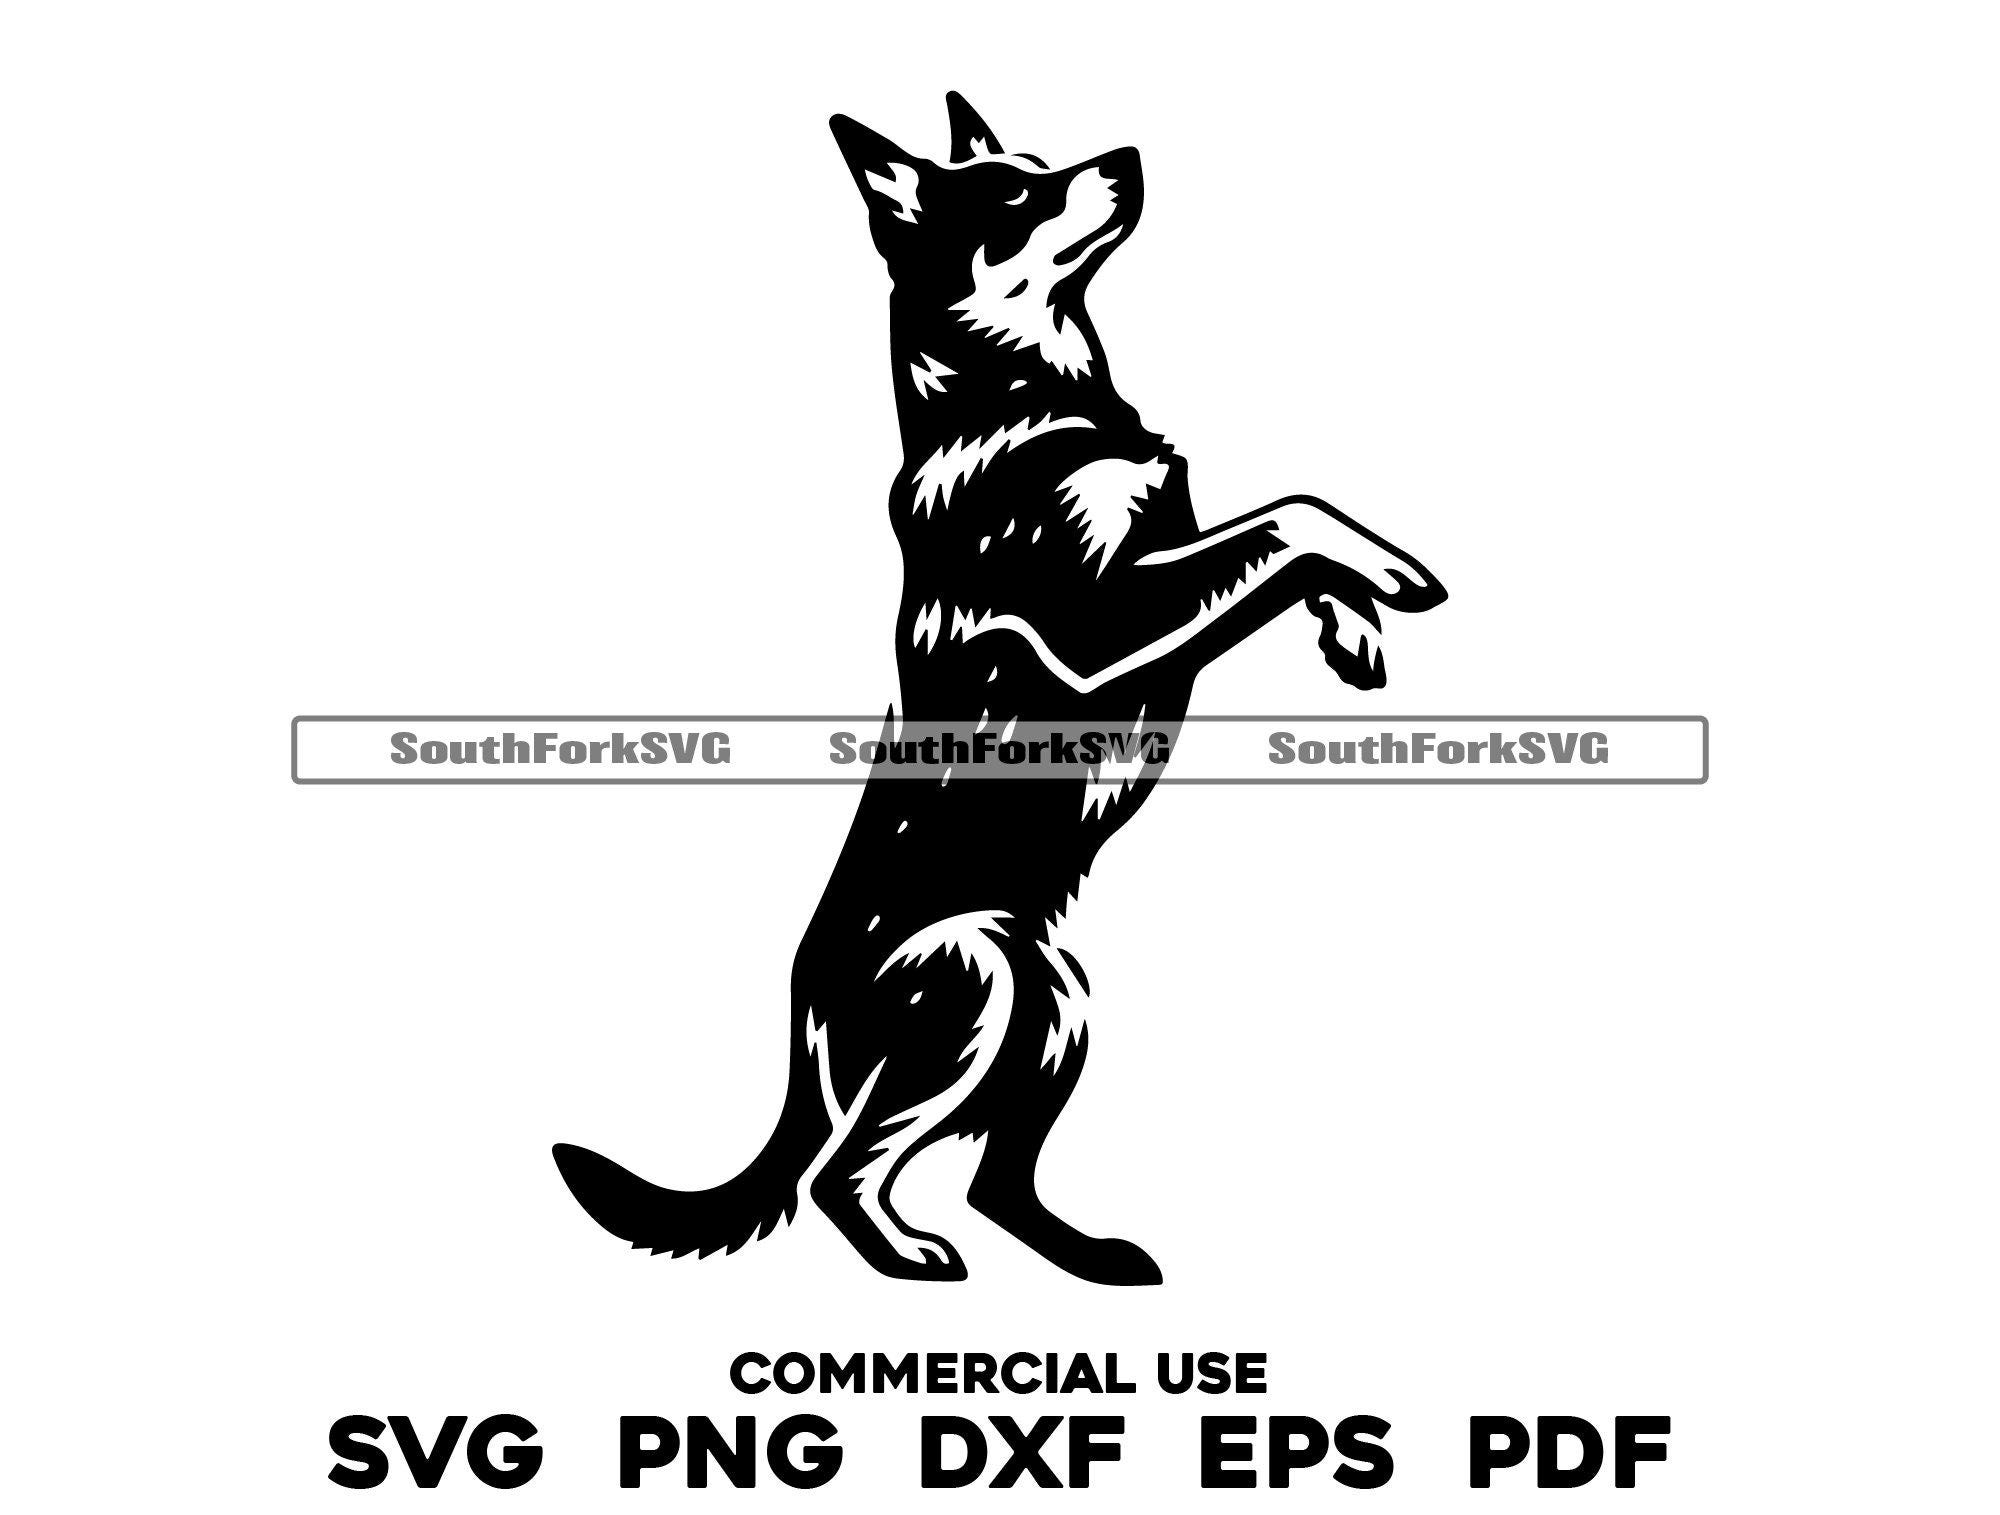 Blue Heeler Begging Hind Legs svg png dxf eps pdf | vector graphic cut file laser clip art instant digital download commercial use